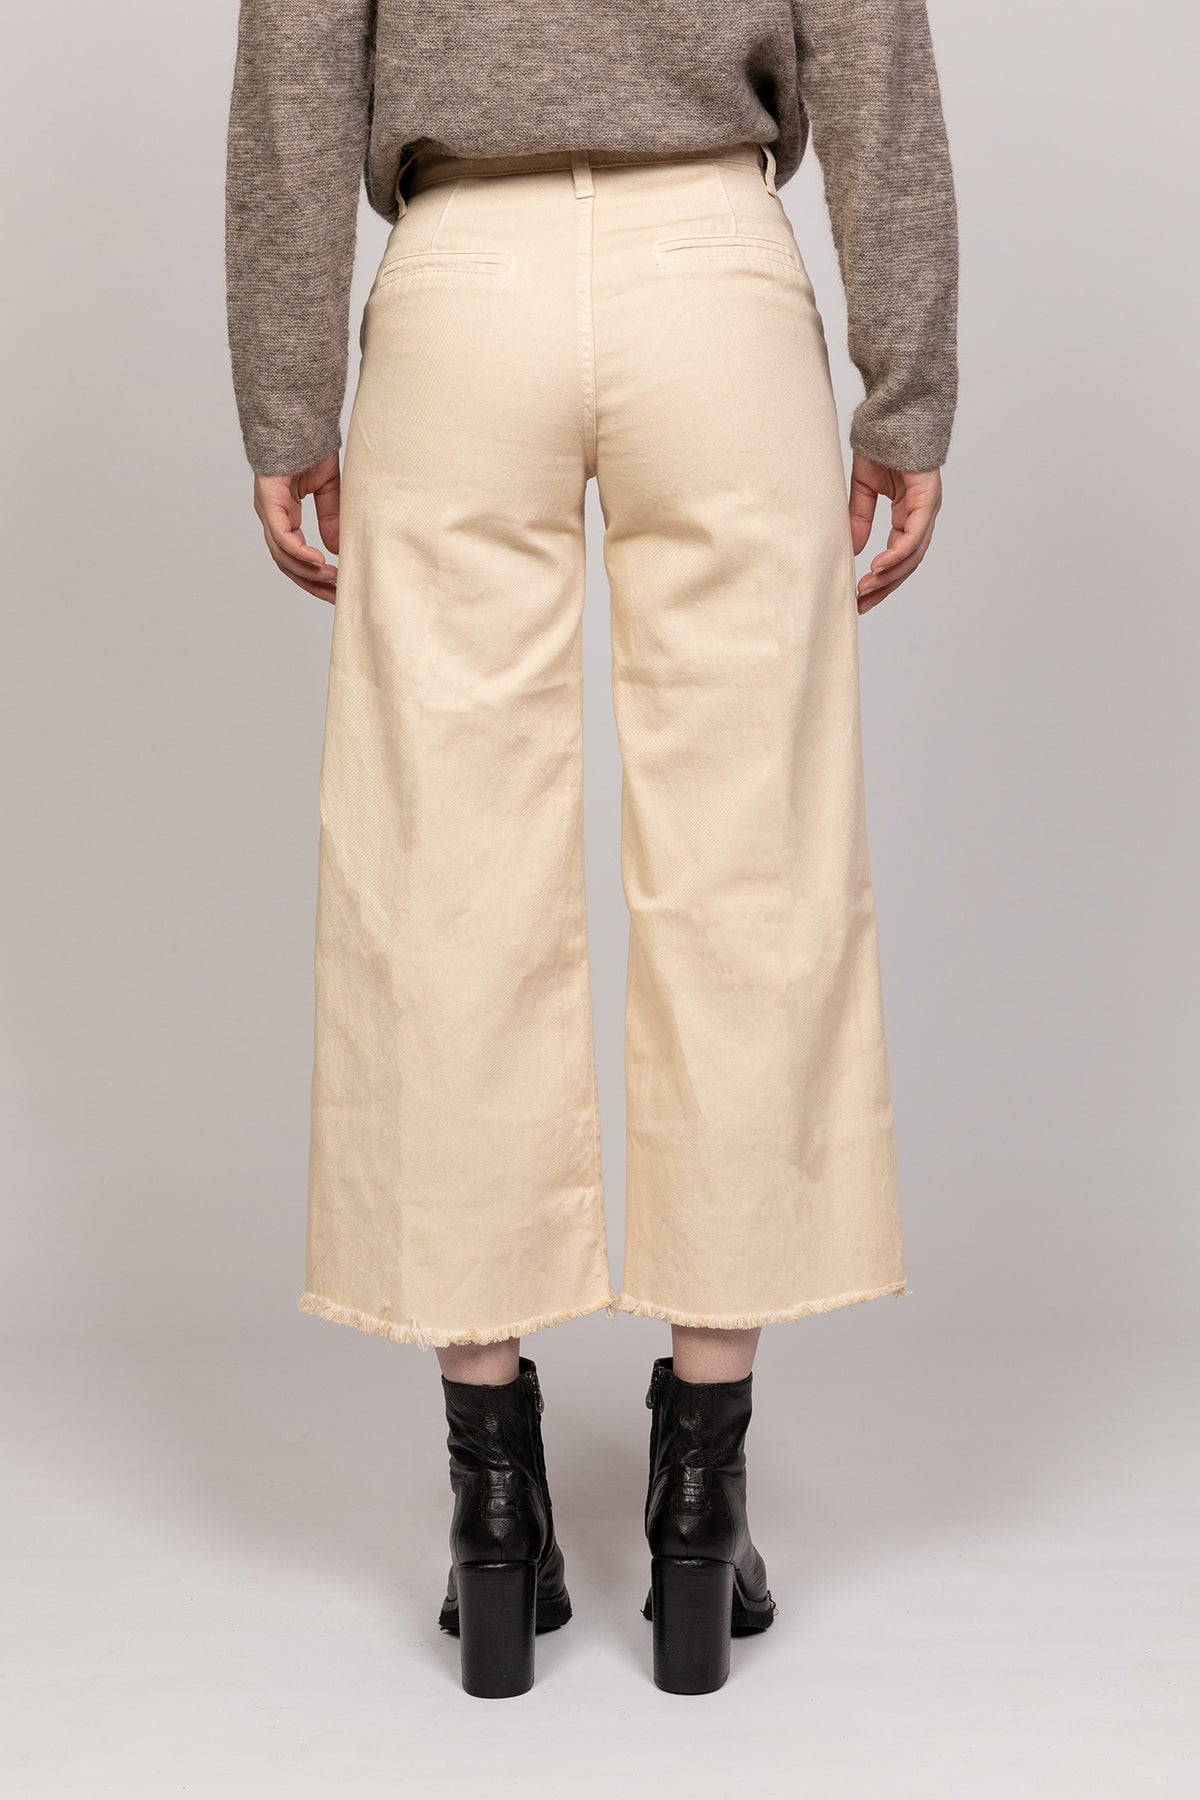 Pantalone drill cotone bianco